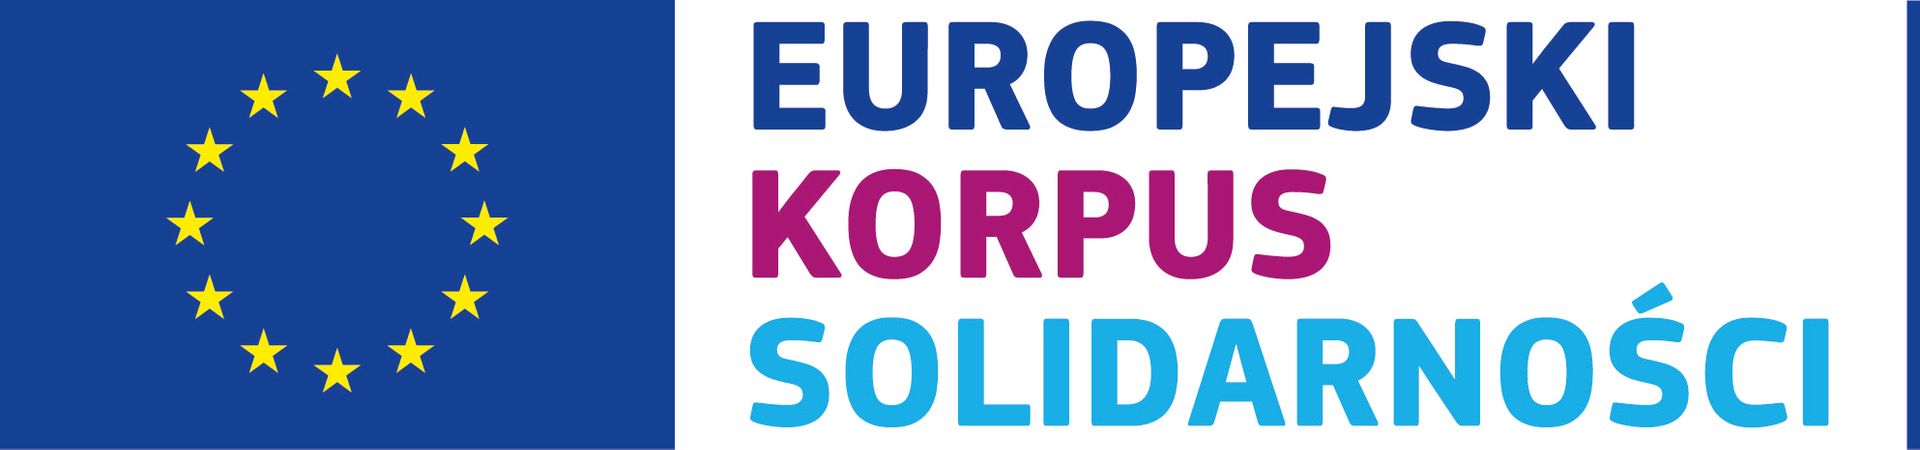 Znak Europejskiego Korpusu Solidarności przedstawia flagę Unii Europejskiej (niebieskie tło z 12 żółtymi gwiazdkami) a obok napis Europejski Korpus Solidarności.